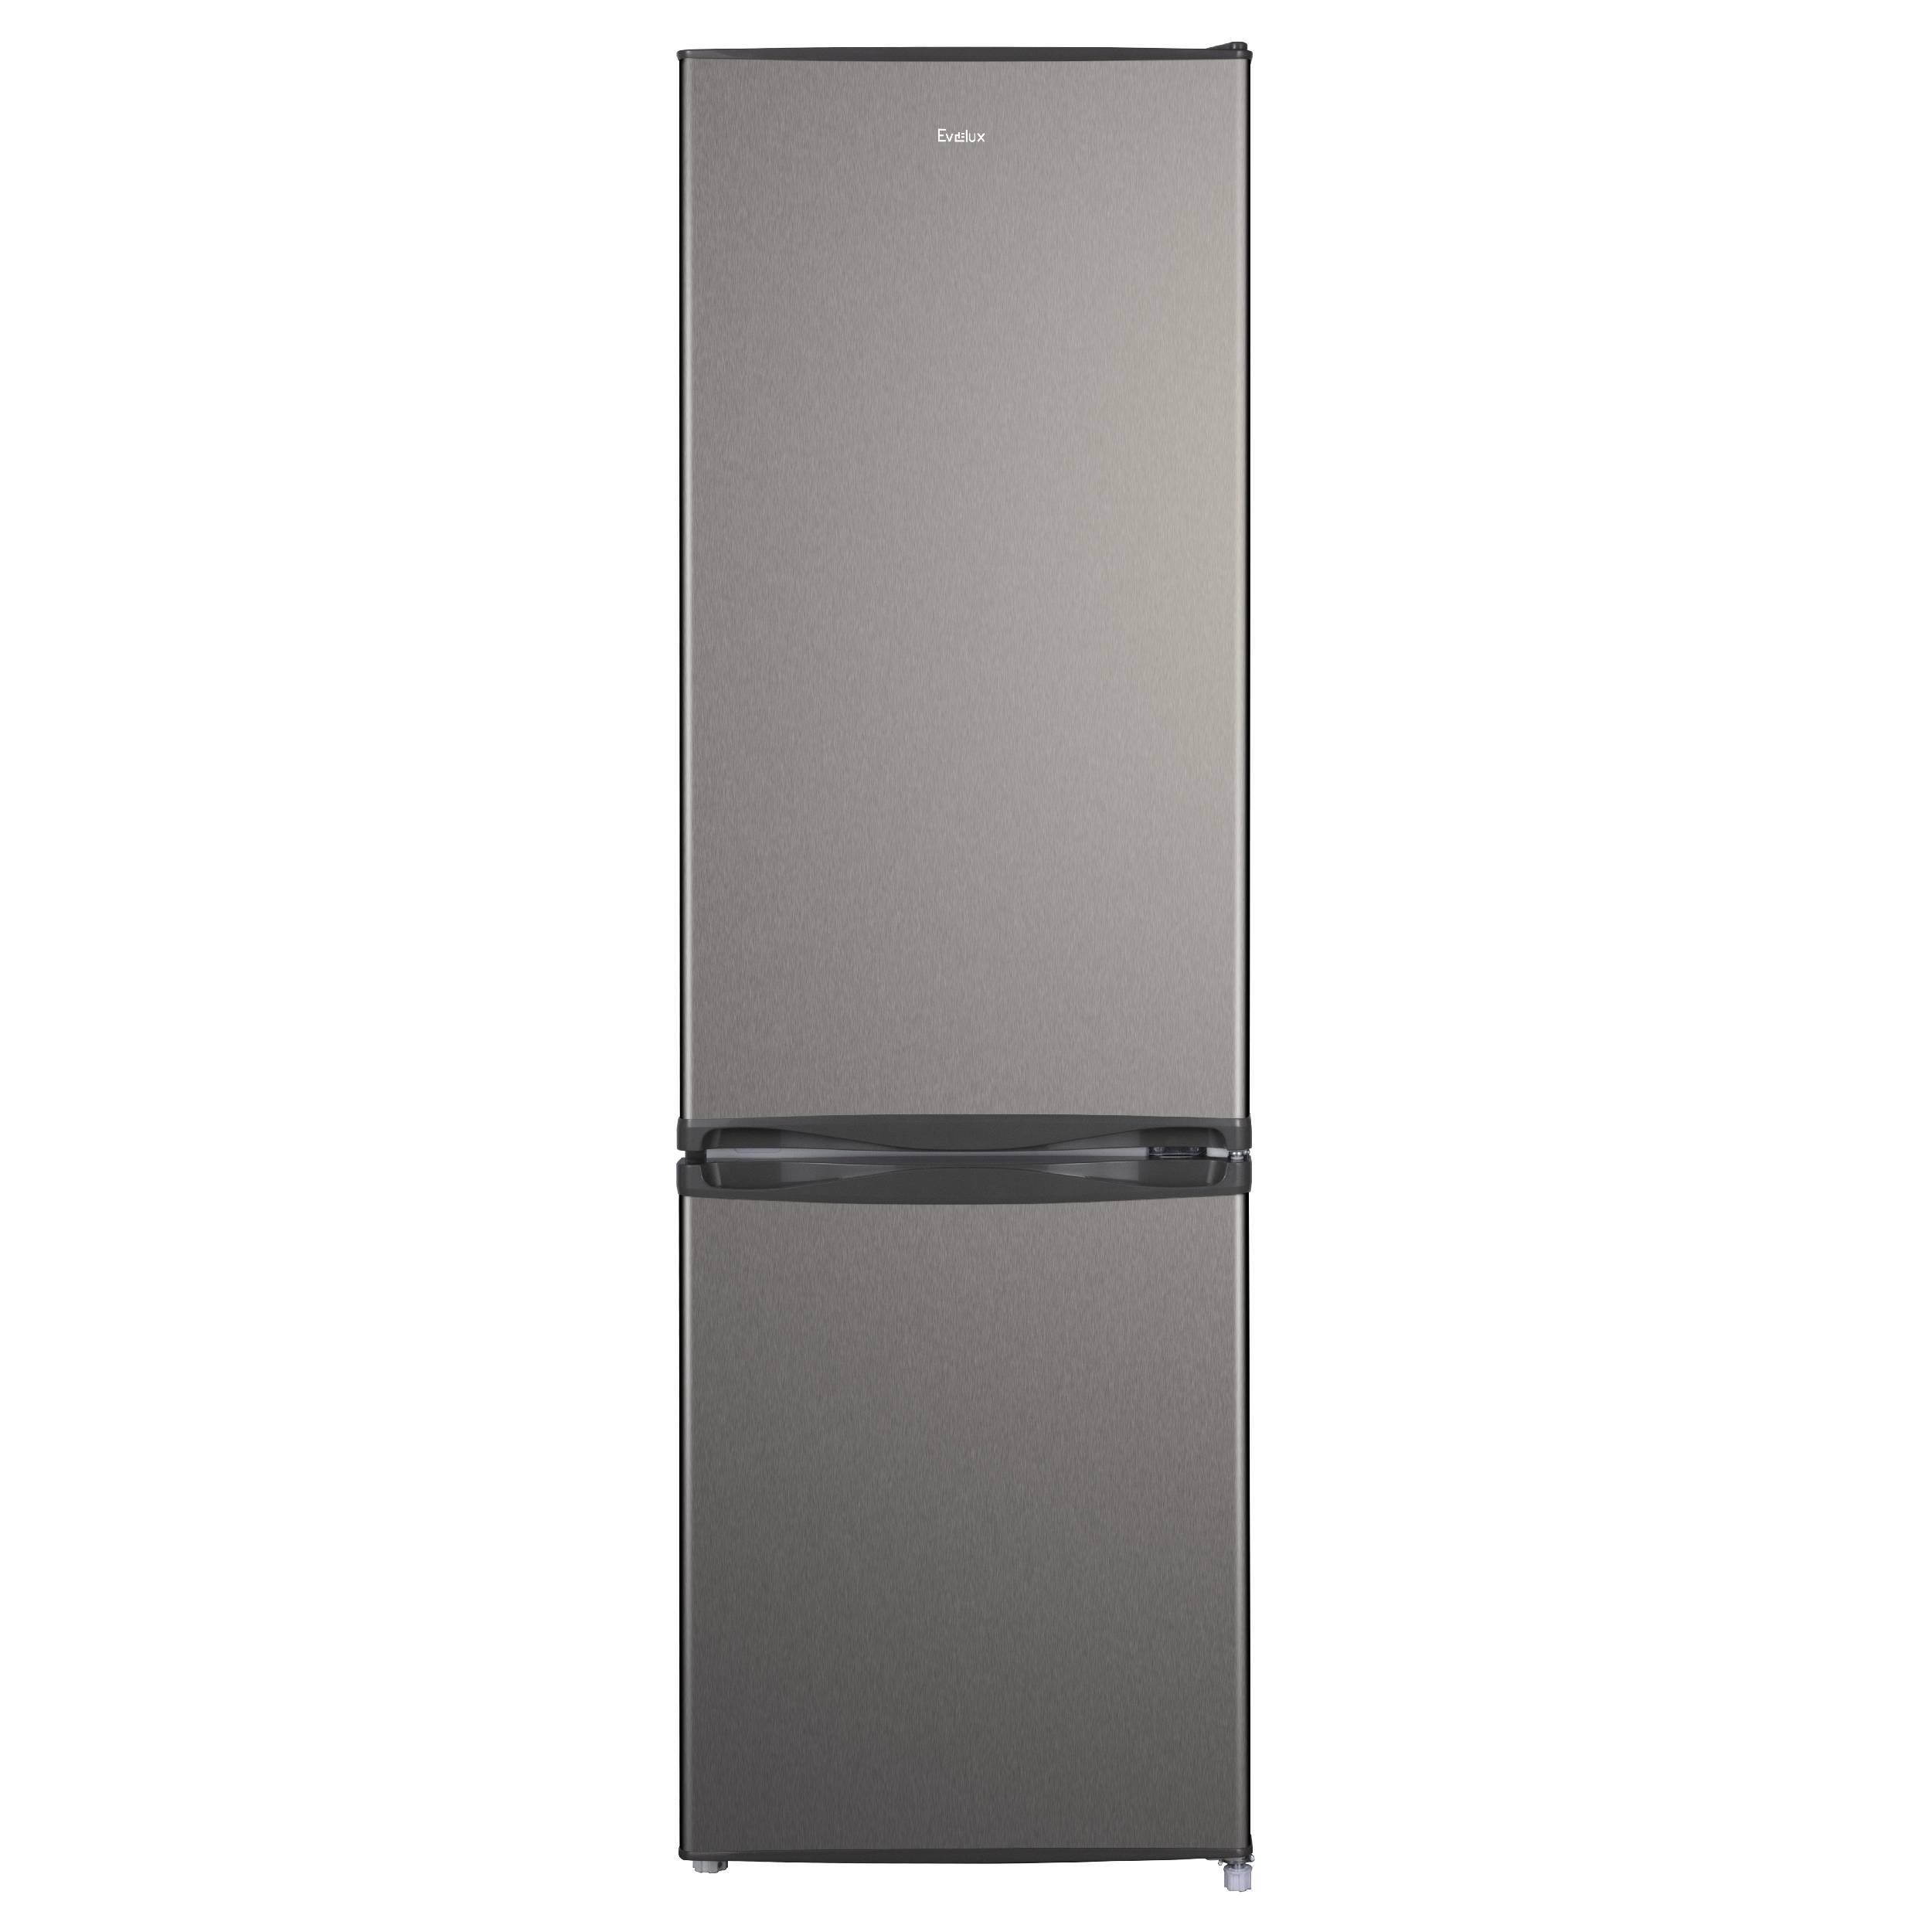 Холодильник Evelux FS 2220 X серебристый двухкамерный холодильник liebherr cnsfd 5733 20 001 серебристый